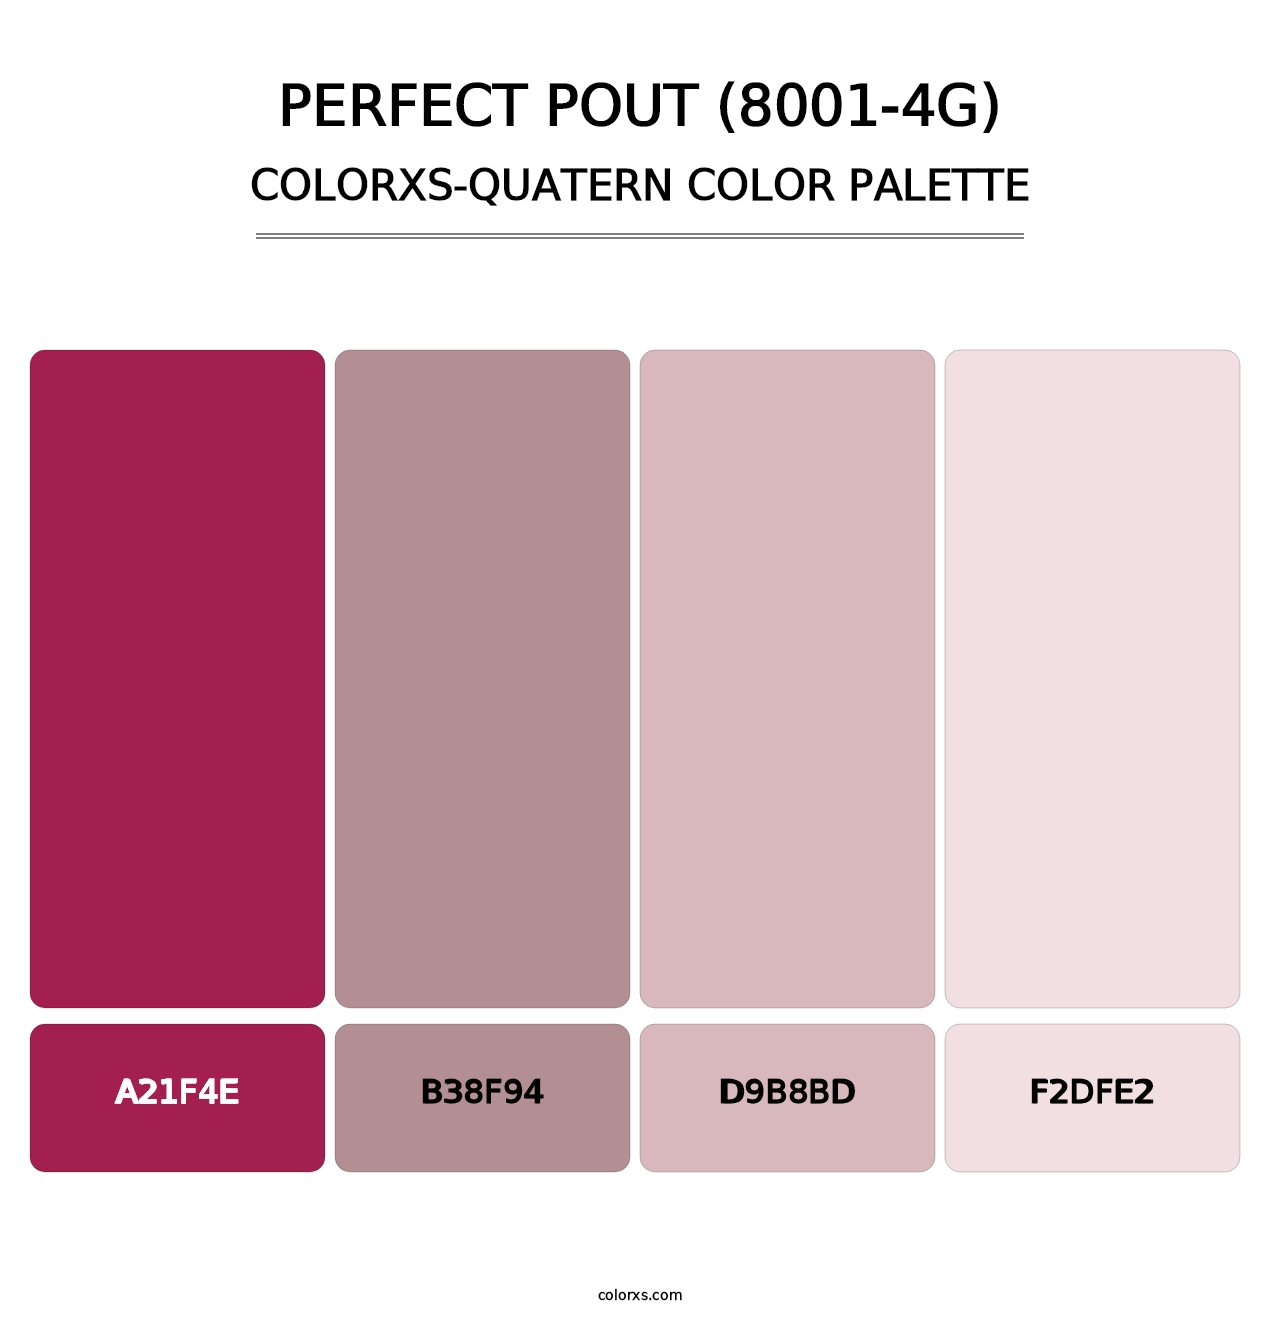 Perfect Pout (8001-4G) - Colorxs Quatern Palette